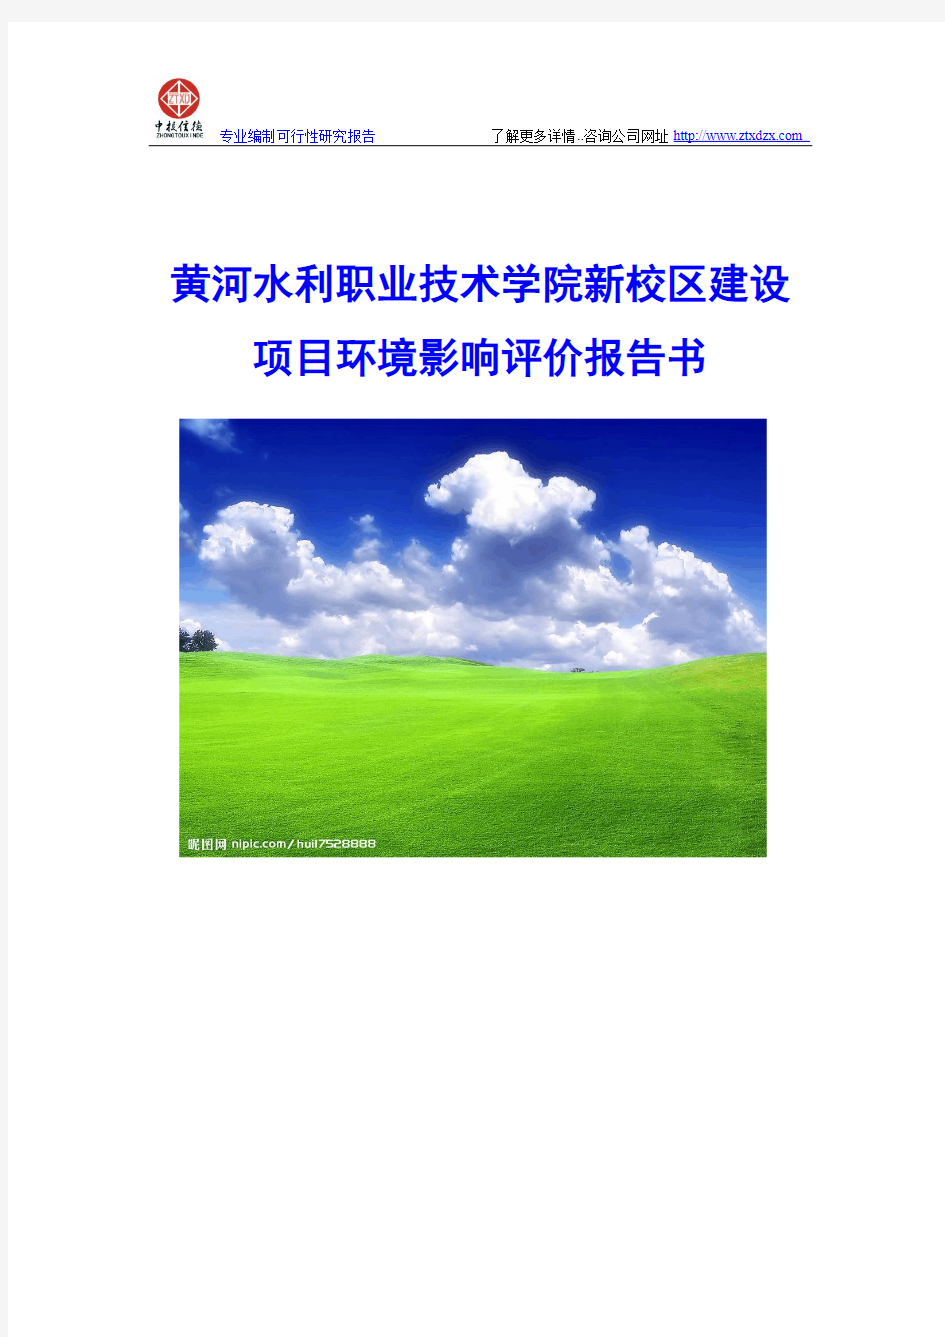 黄河水利职业技术学院新校区建设项目环境影响评价报告书